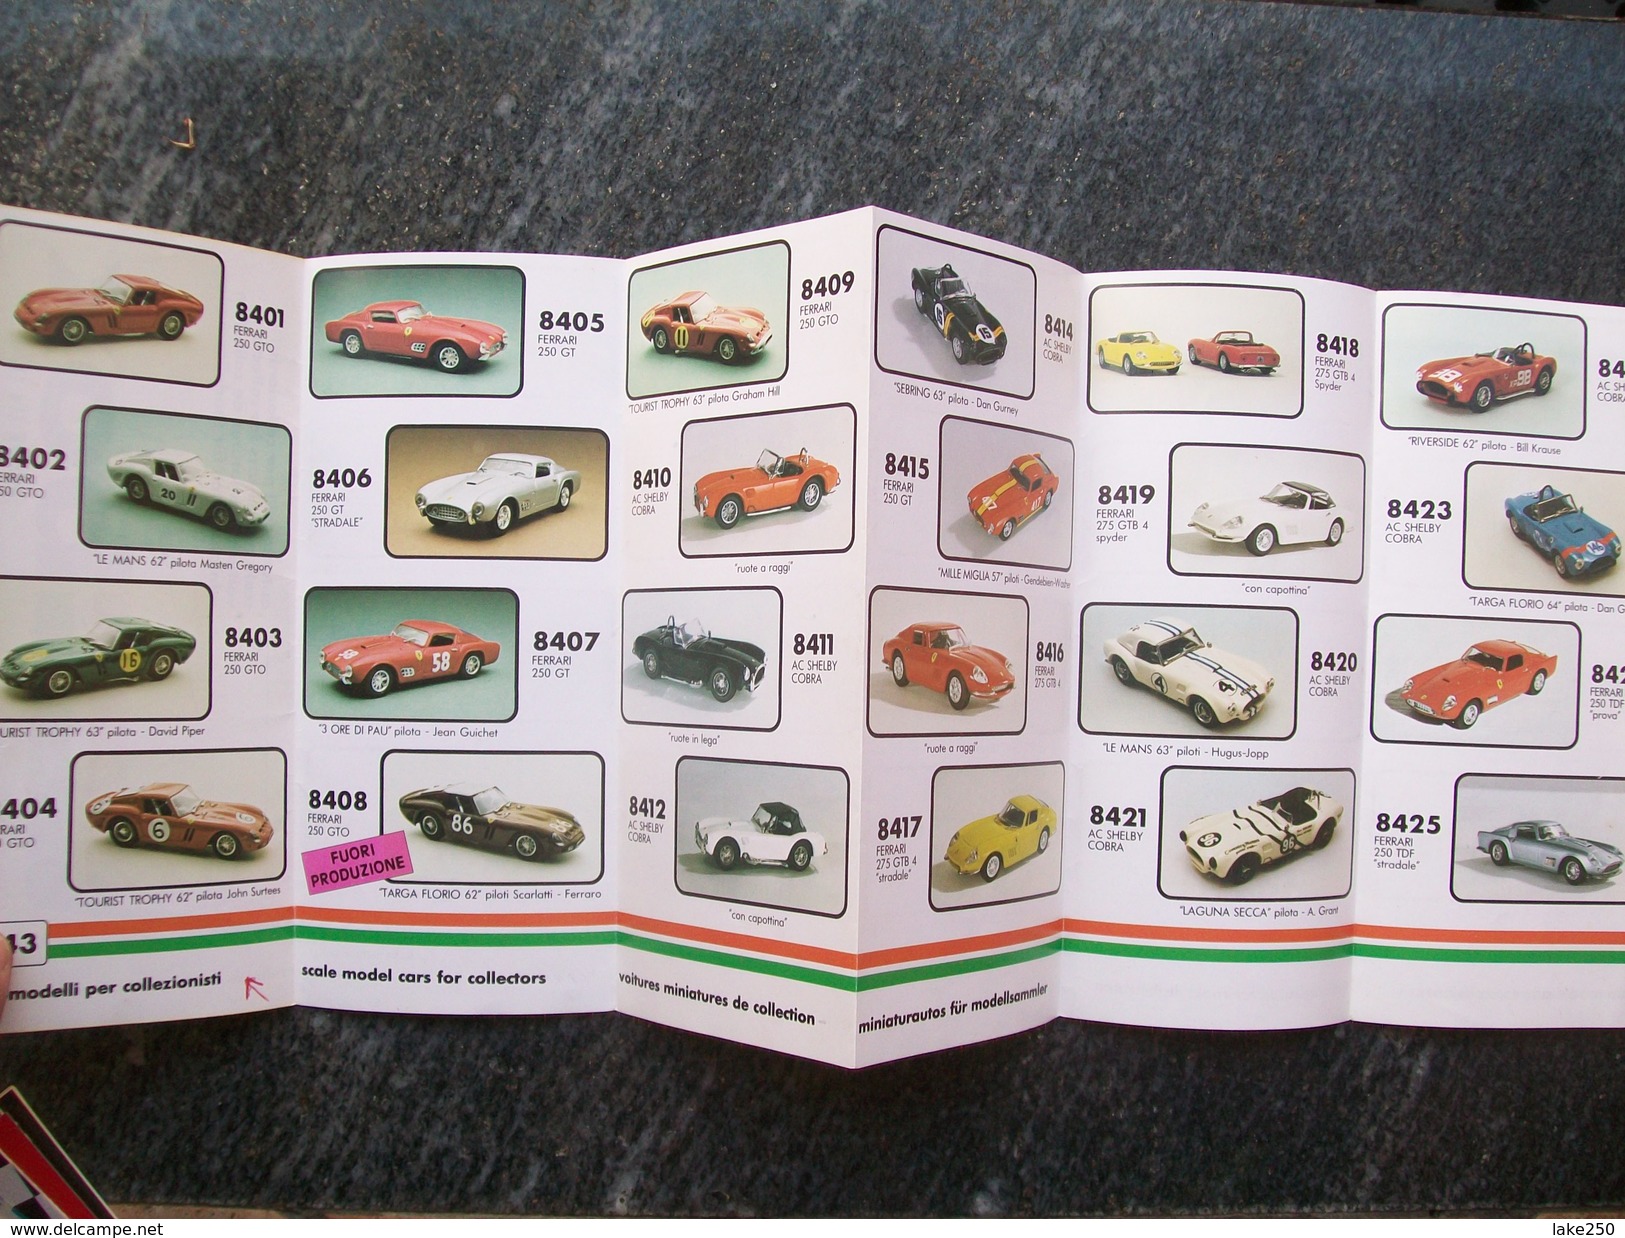 CATALOGO / PIEGHEVOLE  BOX MODEL AUTOMODELLI IN SCALA 1/43  1988  FERRARI - Italië